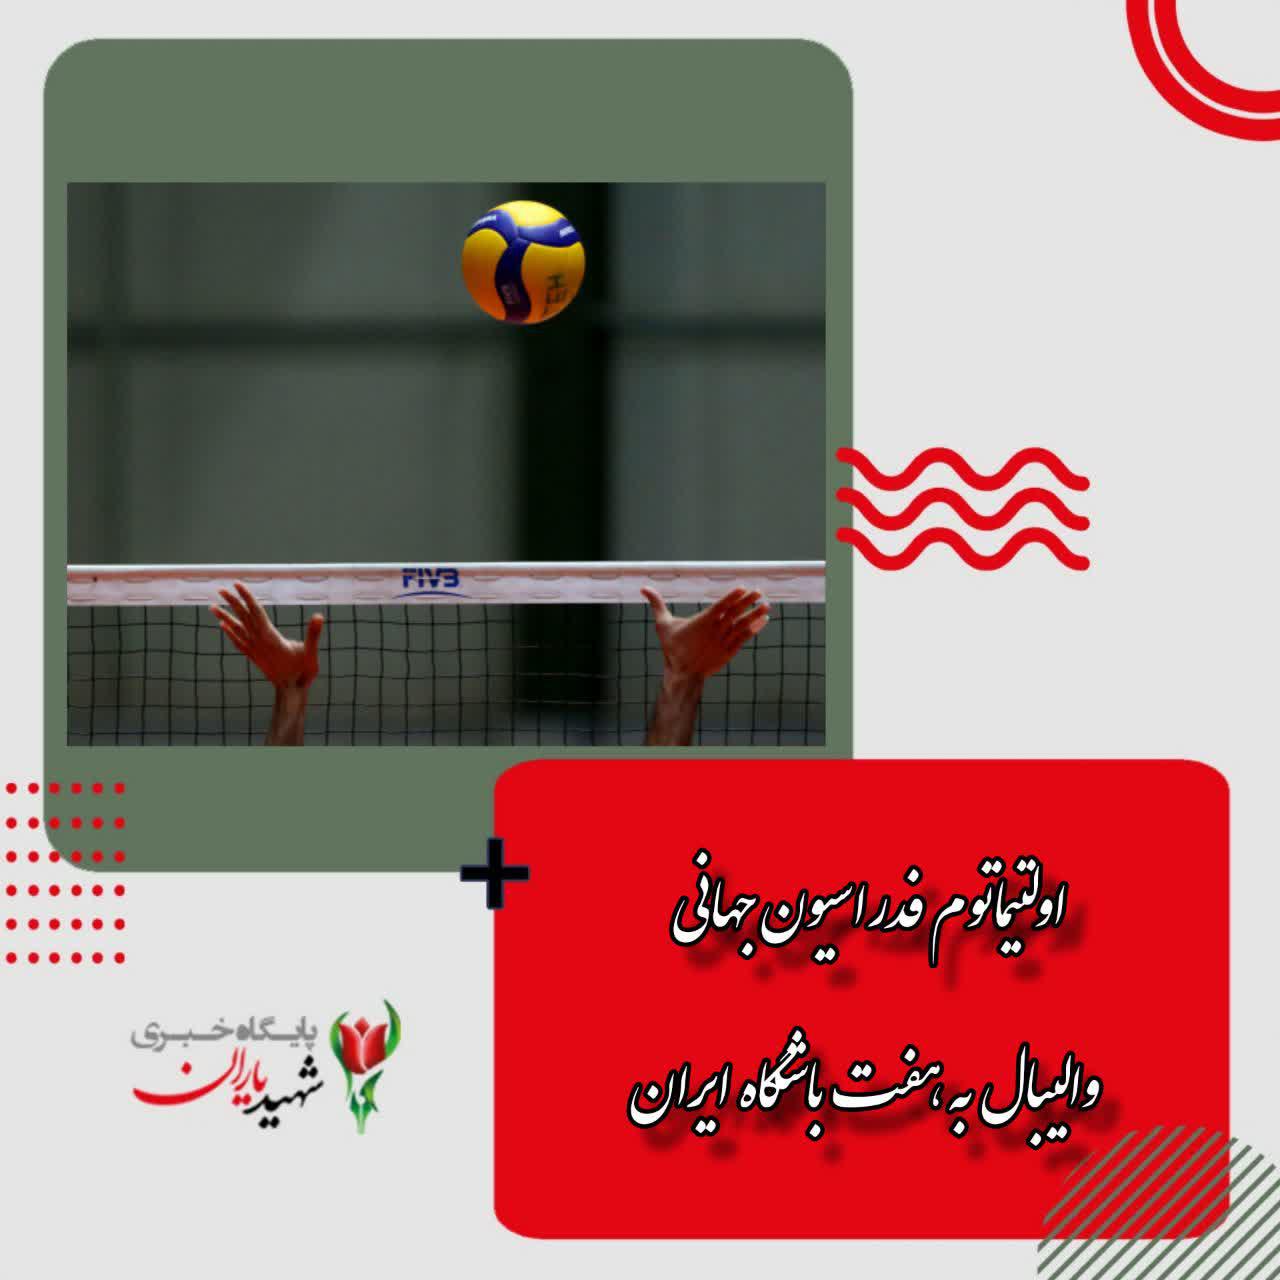 اولتیماتوم فدراسیون جهانی والیبال به هفت باشگاه ایران